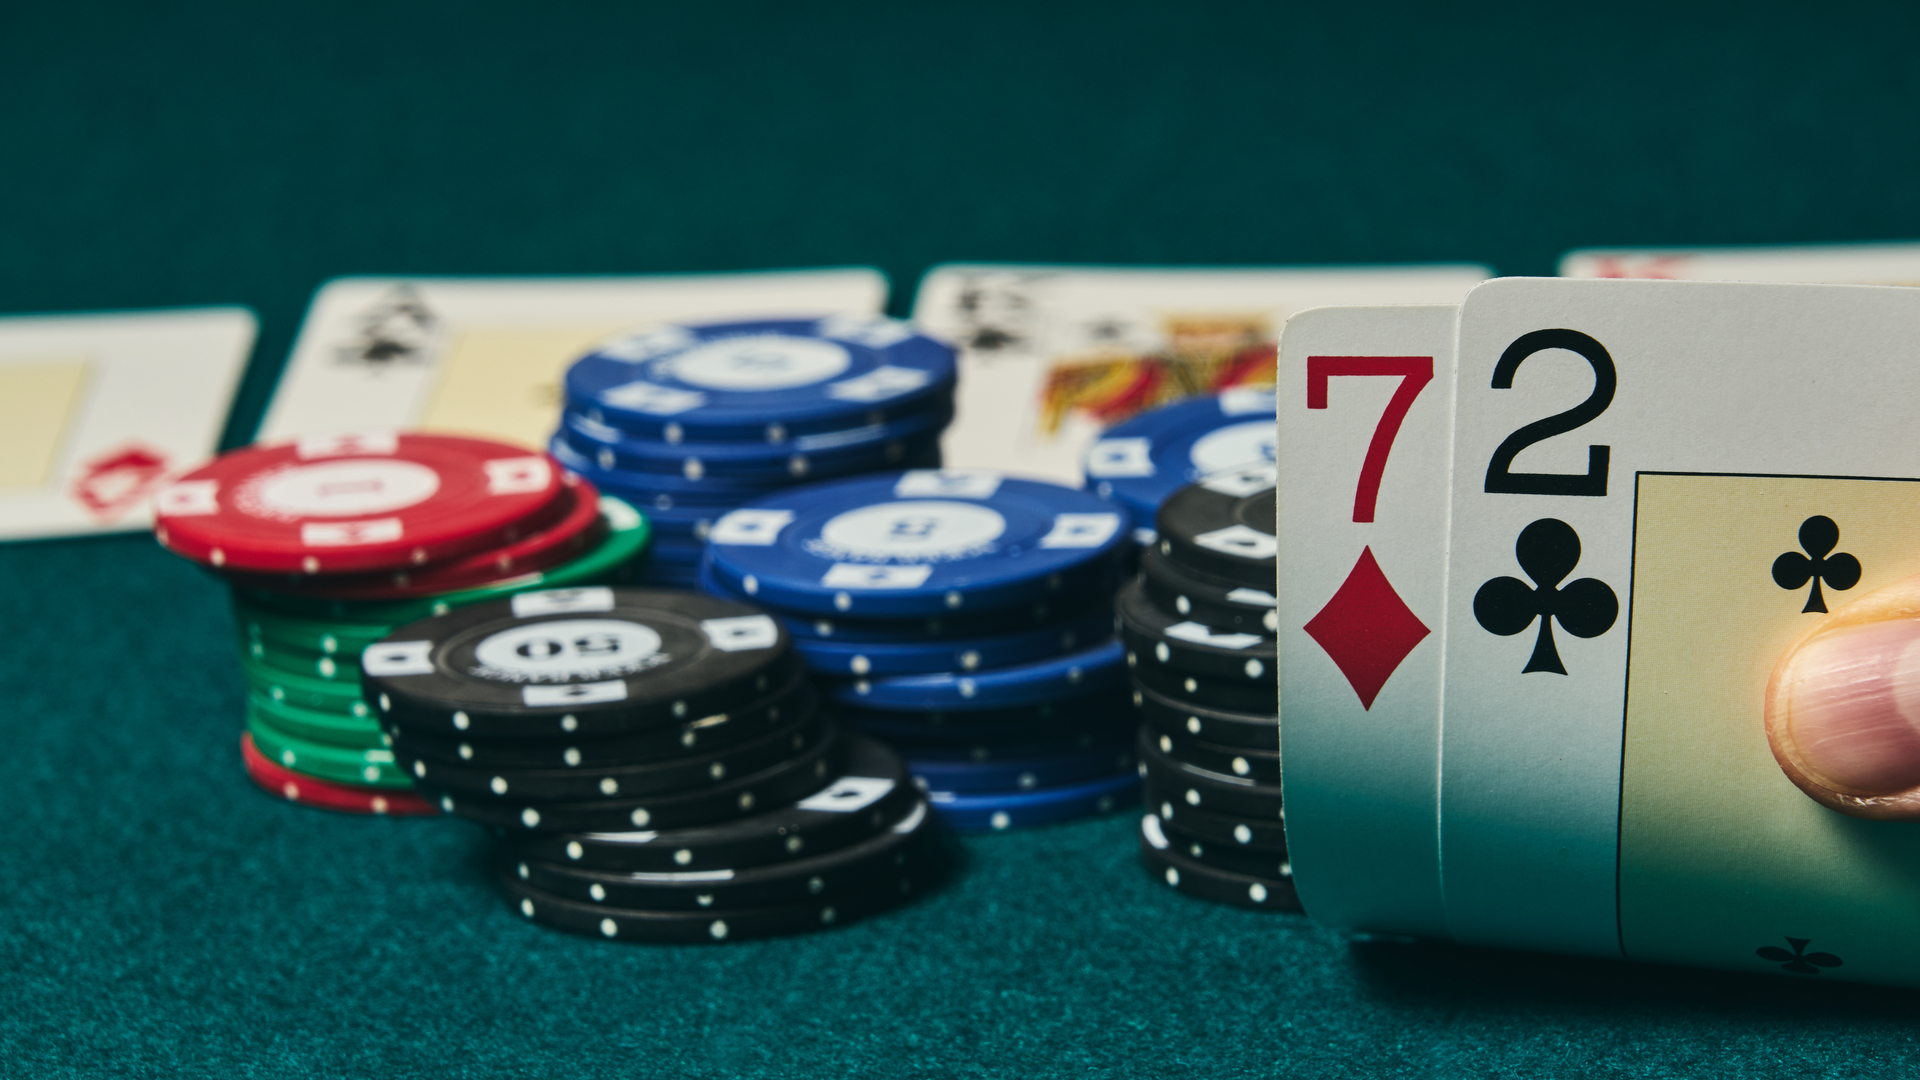 Como os investimentos e o jogo de Poker se relacionam? Minha análise  prática das semelhanças e